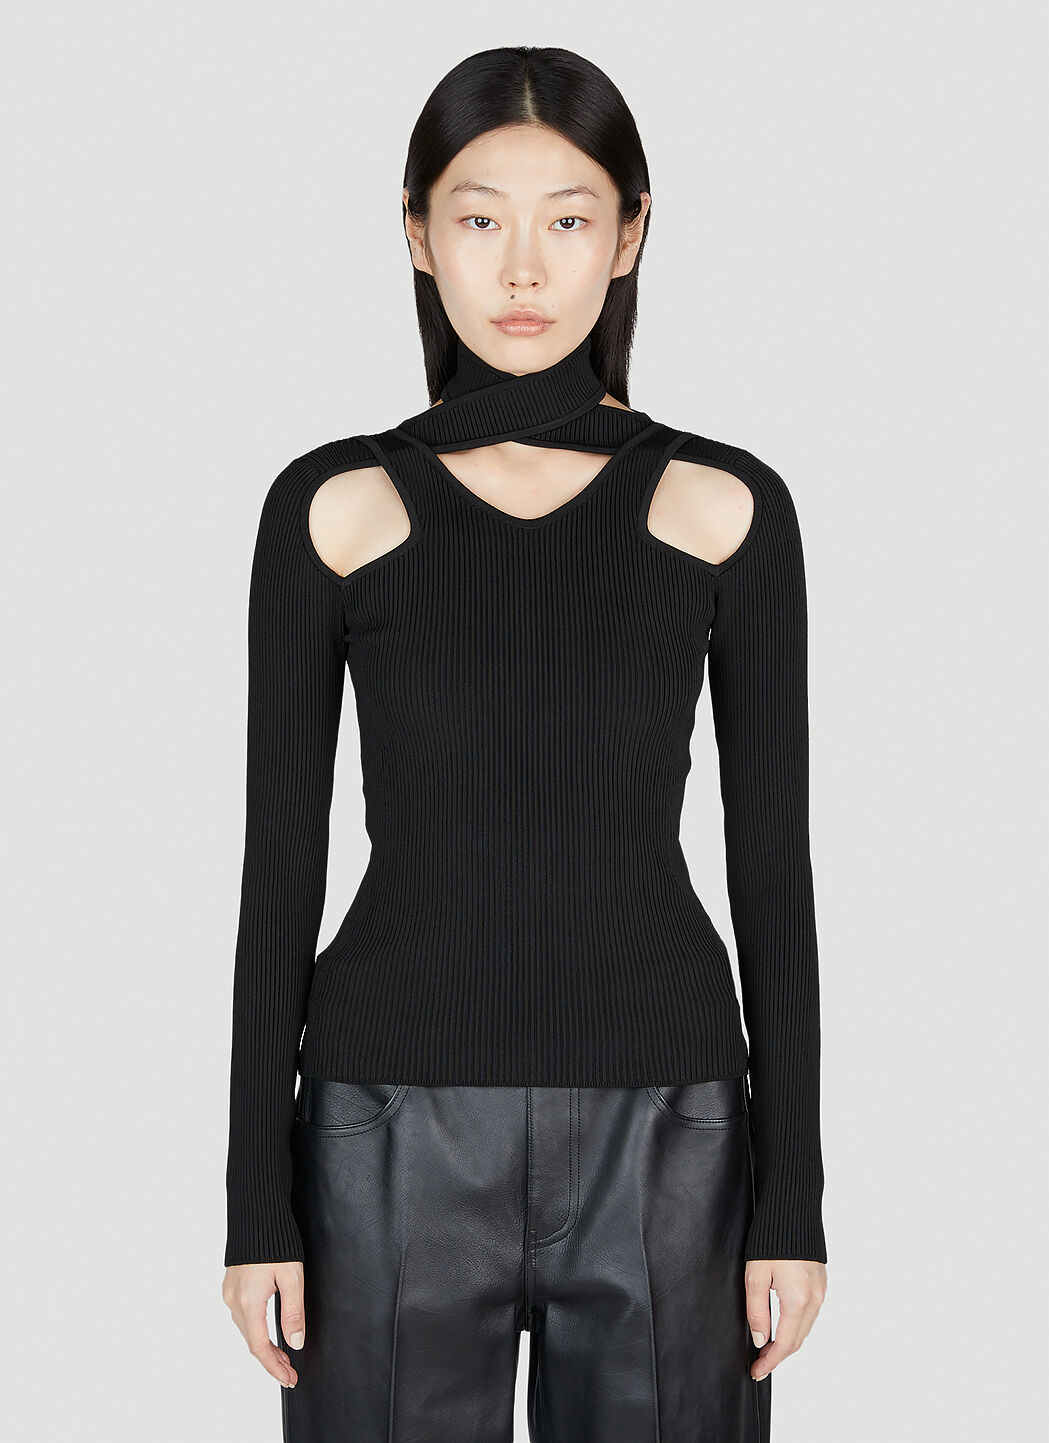 Coperni Cut-Out Knit Sweater Black cpn0253019